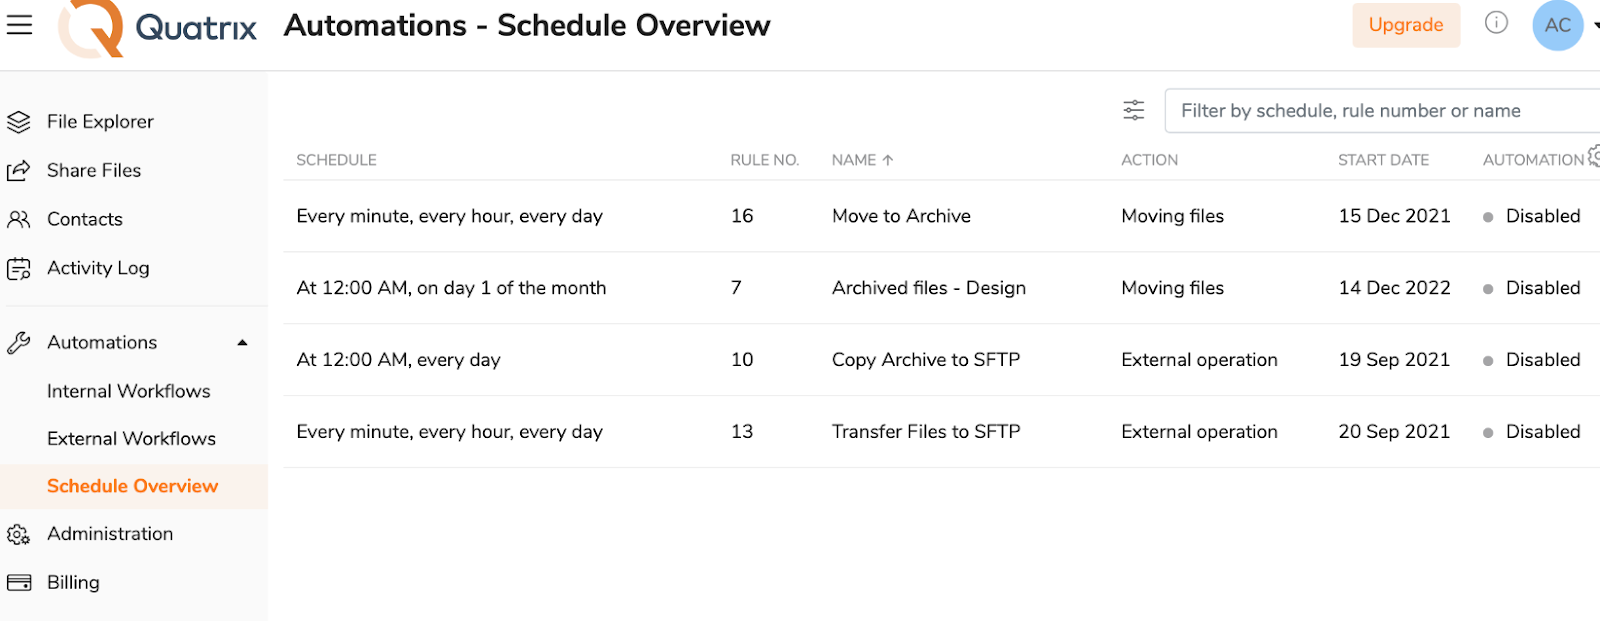 Quatrix automation schedule overview